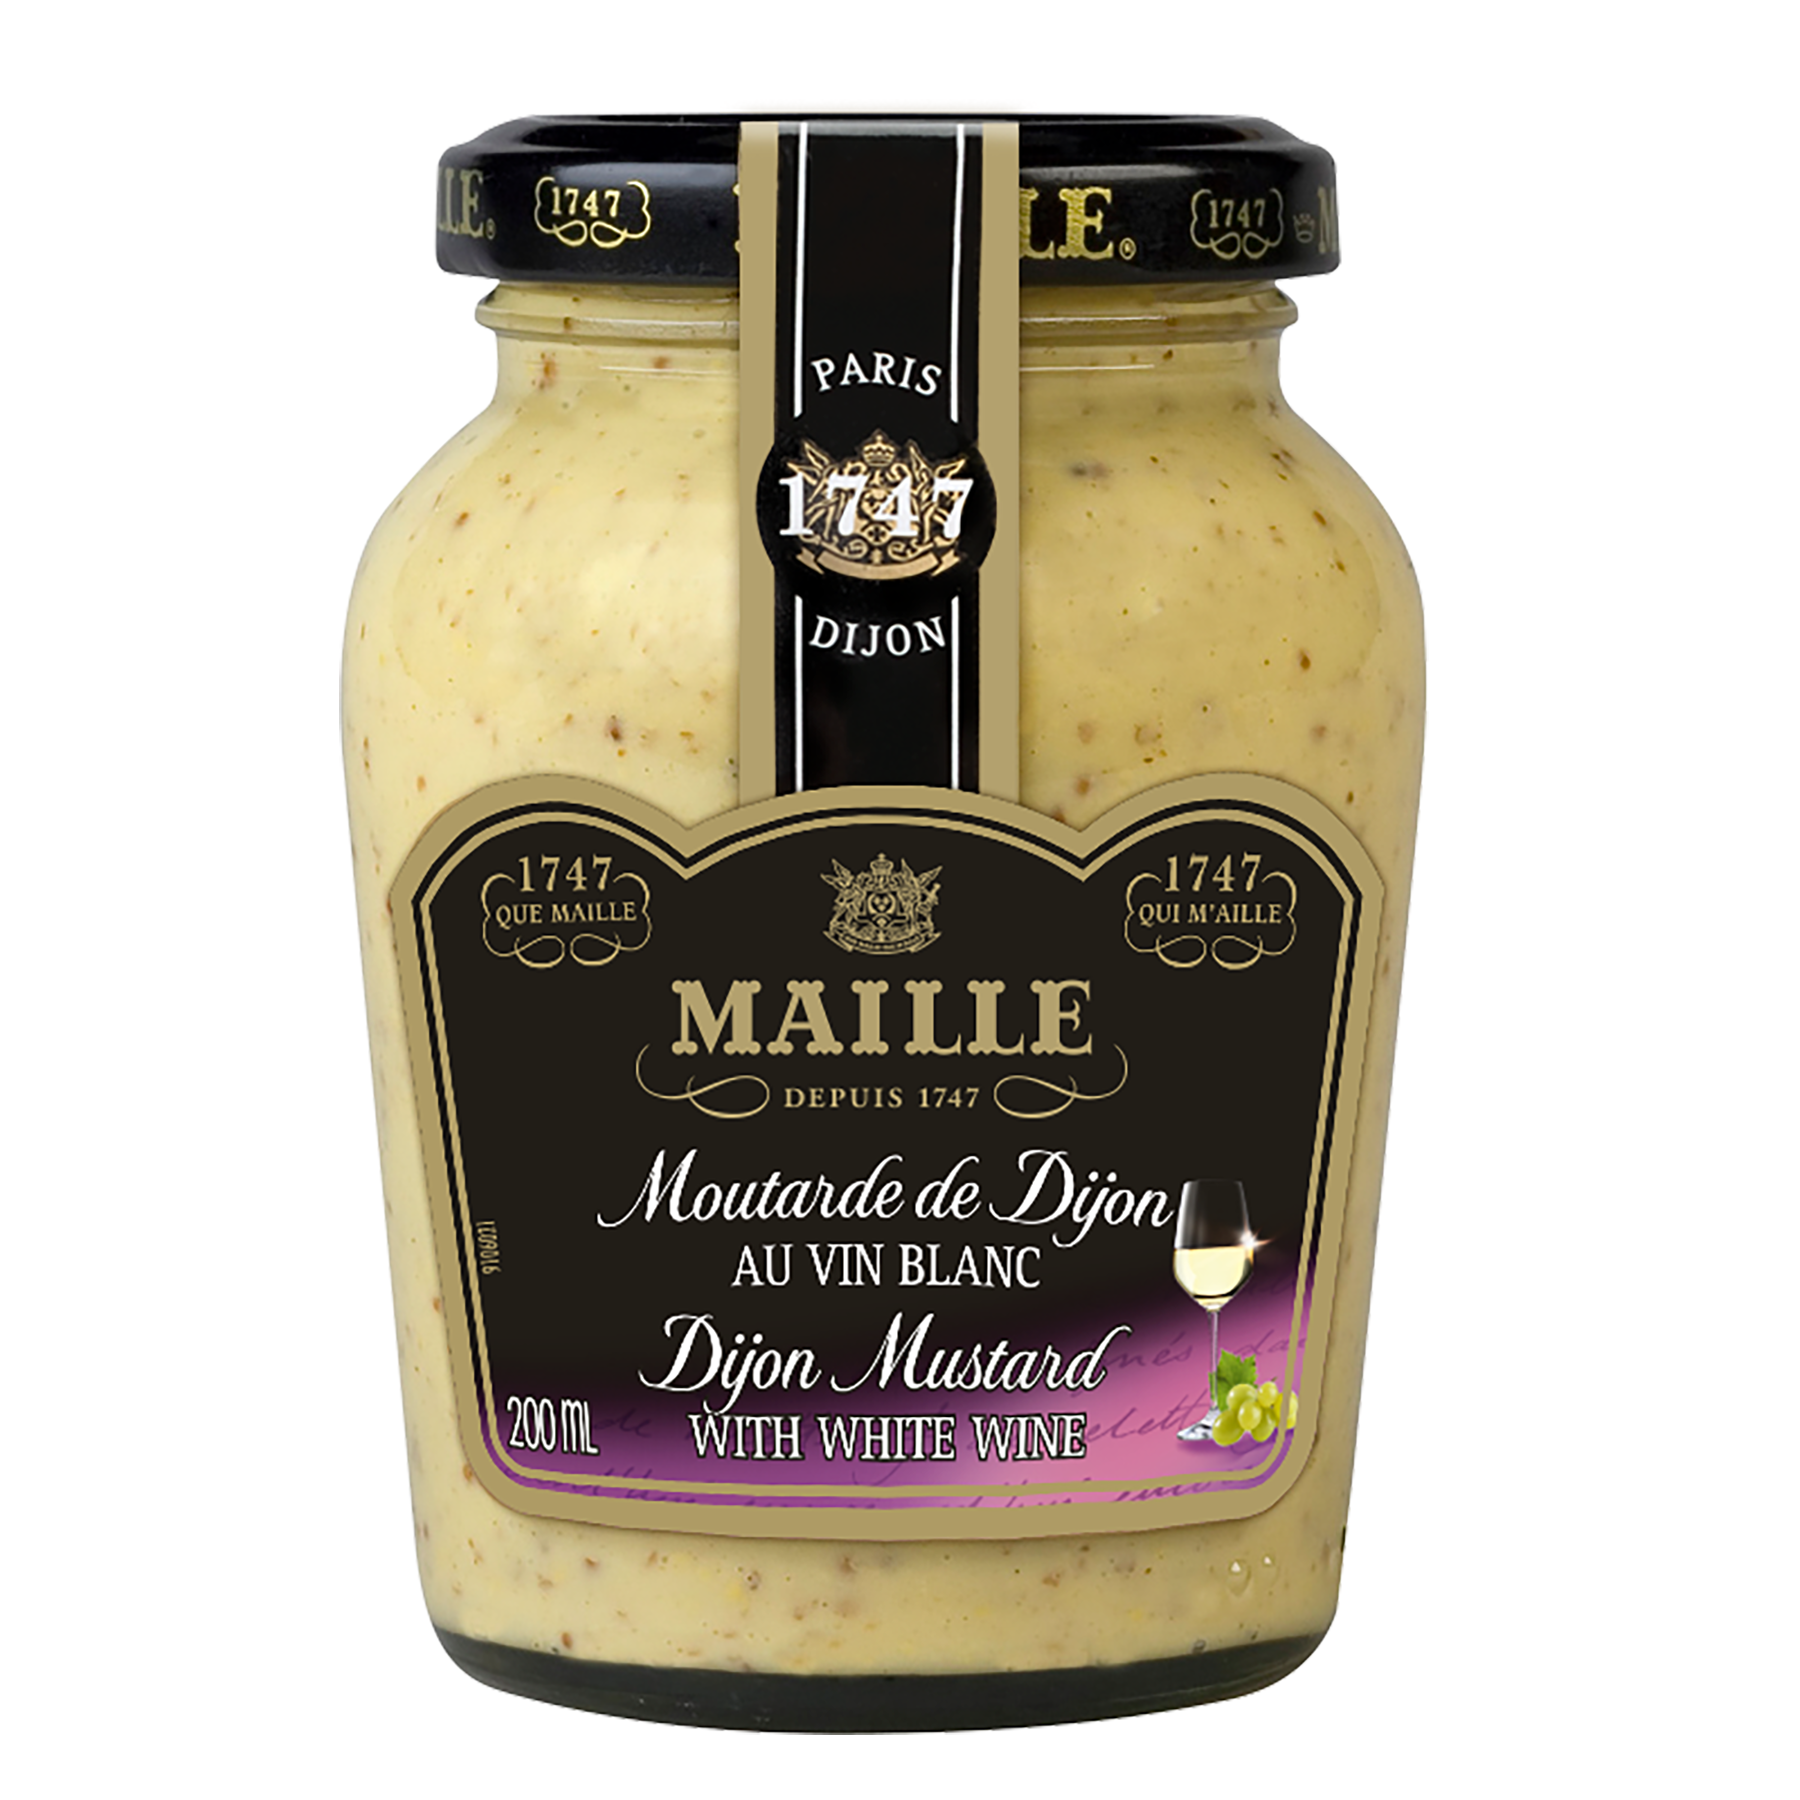 Maille Moutarde au miel (200ml) acheter à prix réduit